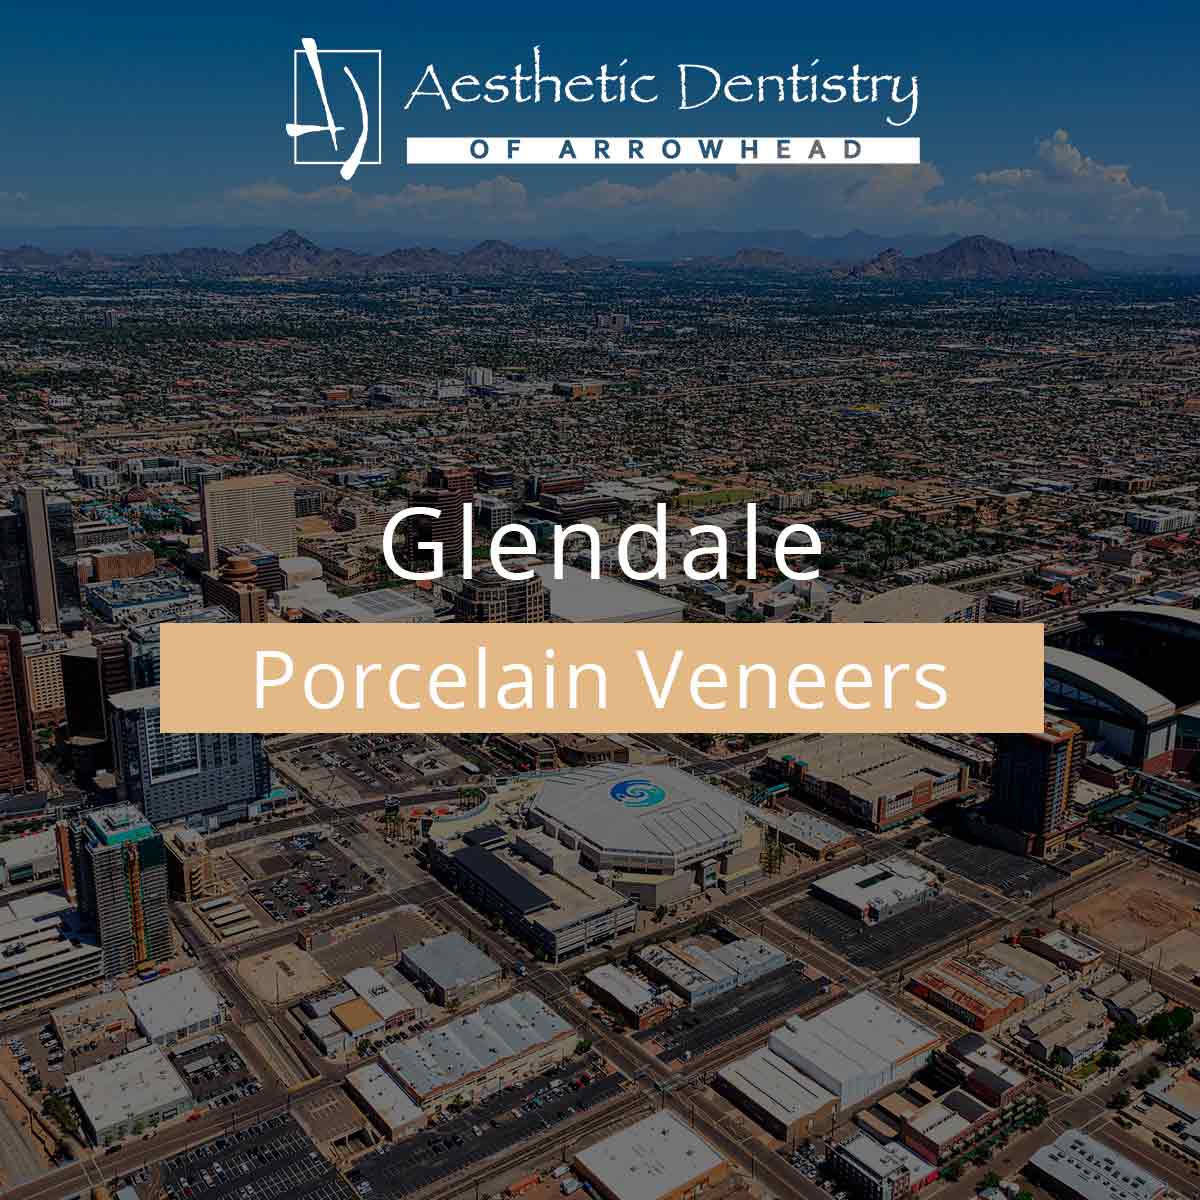 Glendale Porcelain Veneers featured image